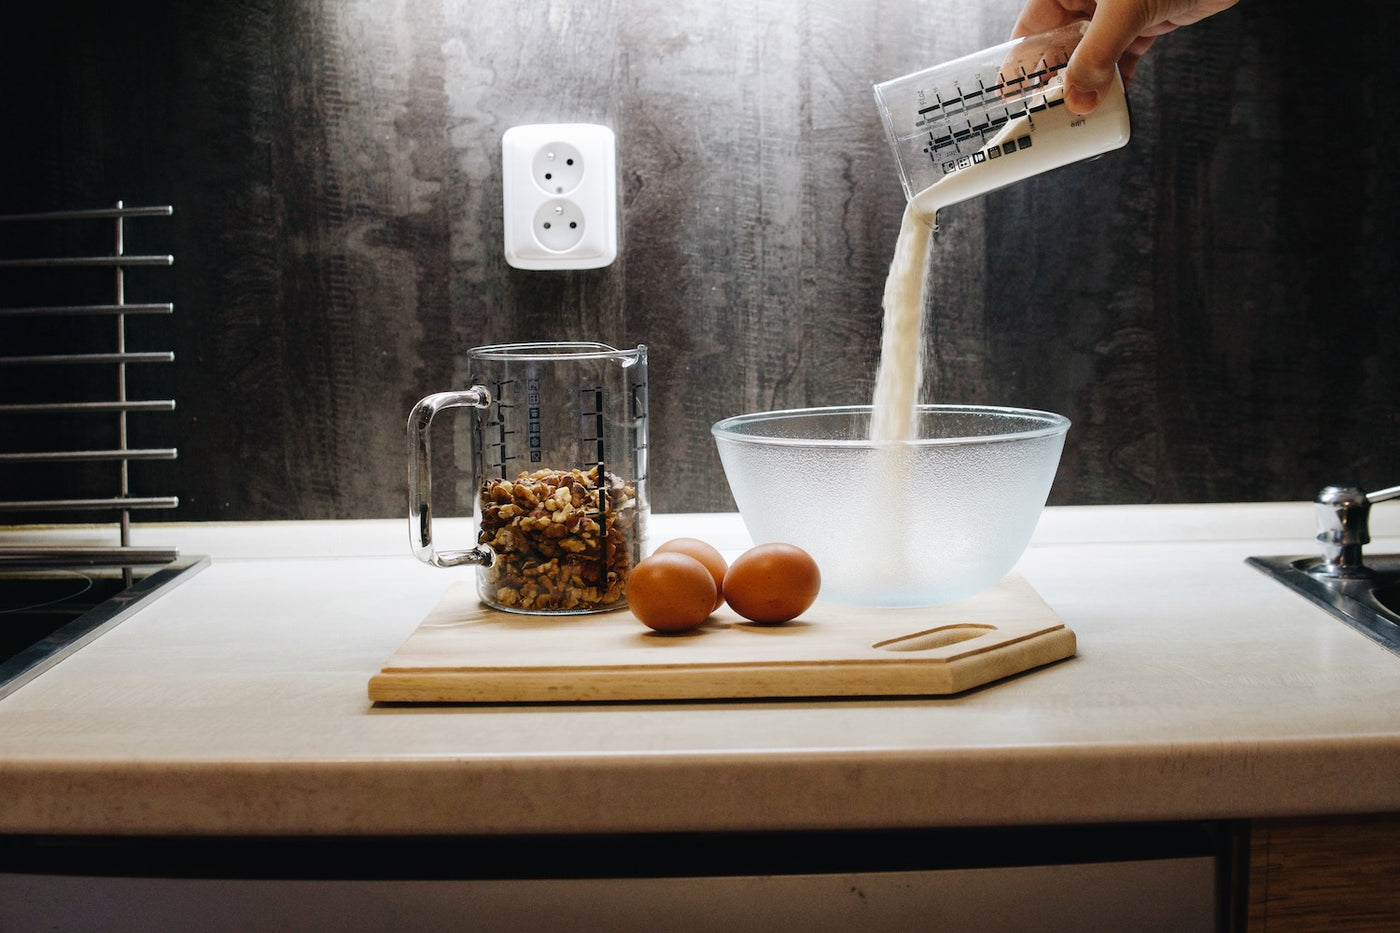 Kuchyňská skleněná odměrka s ořechy a skleněná mísa Simax Frozen při přípravě těsta